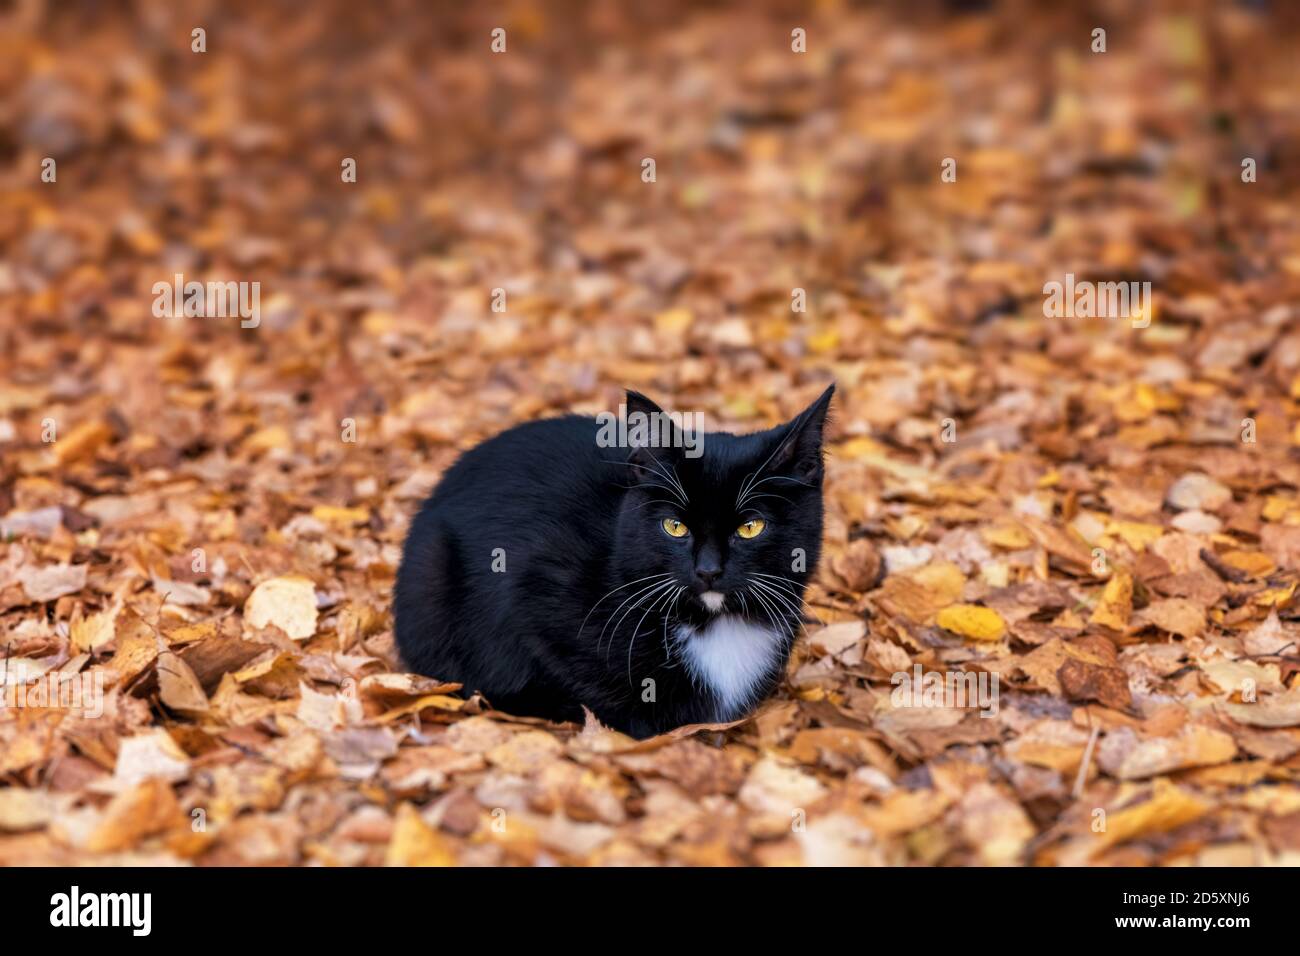 Bel gattino nero giace su foglie d'autunno arancio Foto Stock